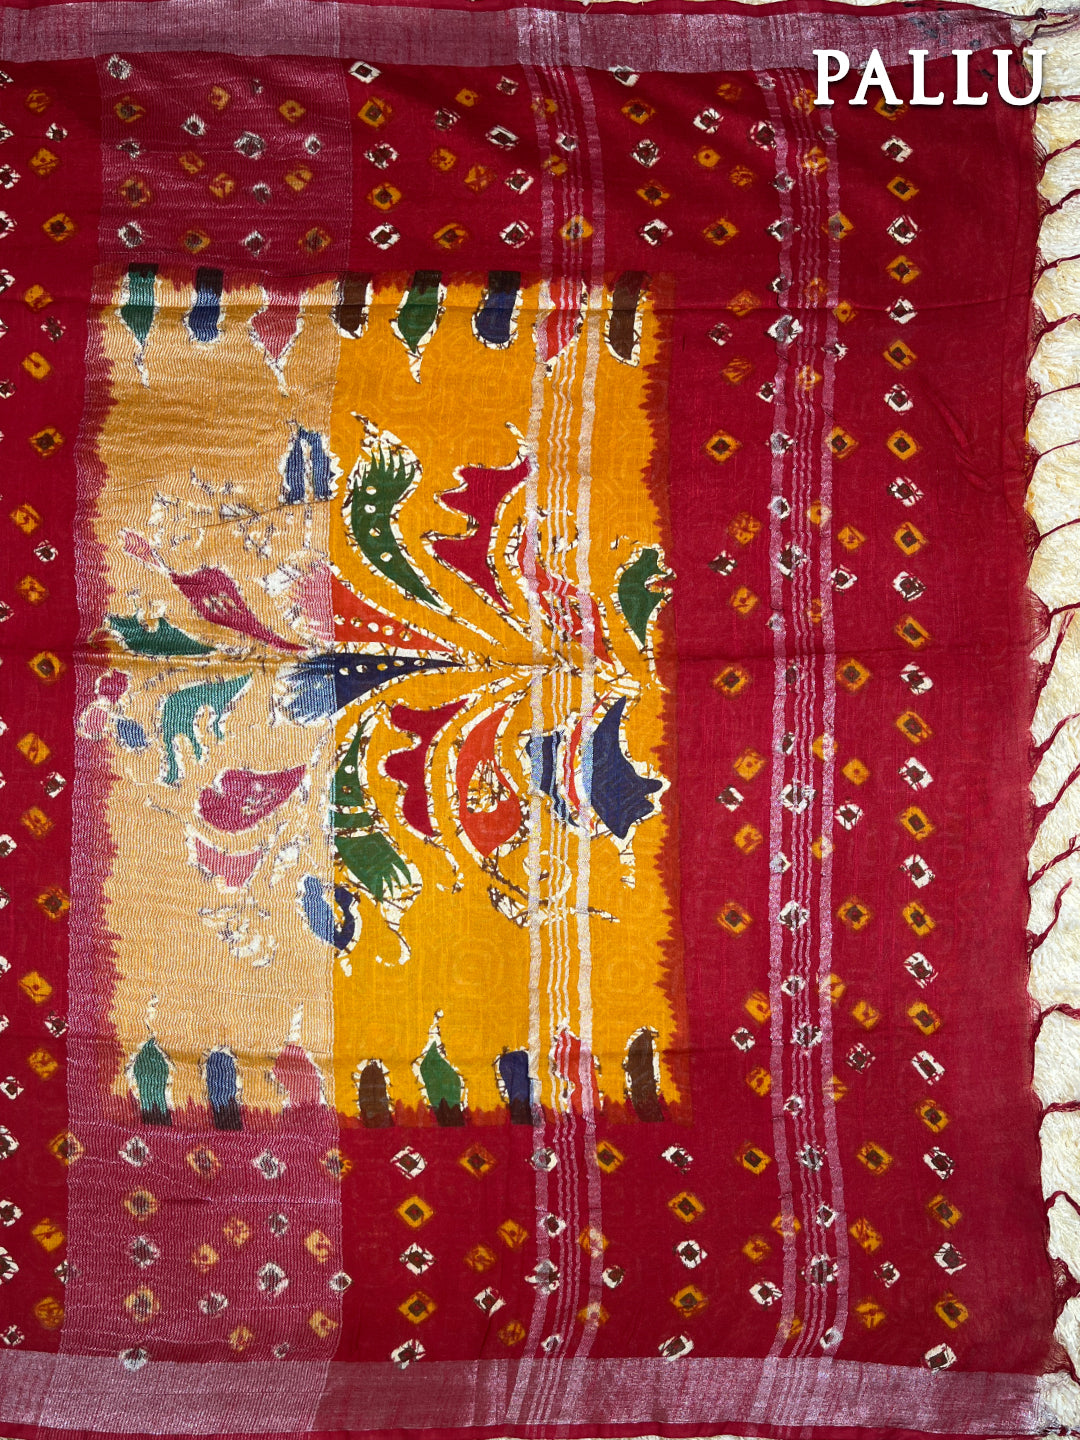 Red and yellow linen batik saree